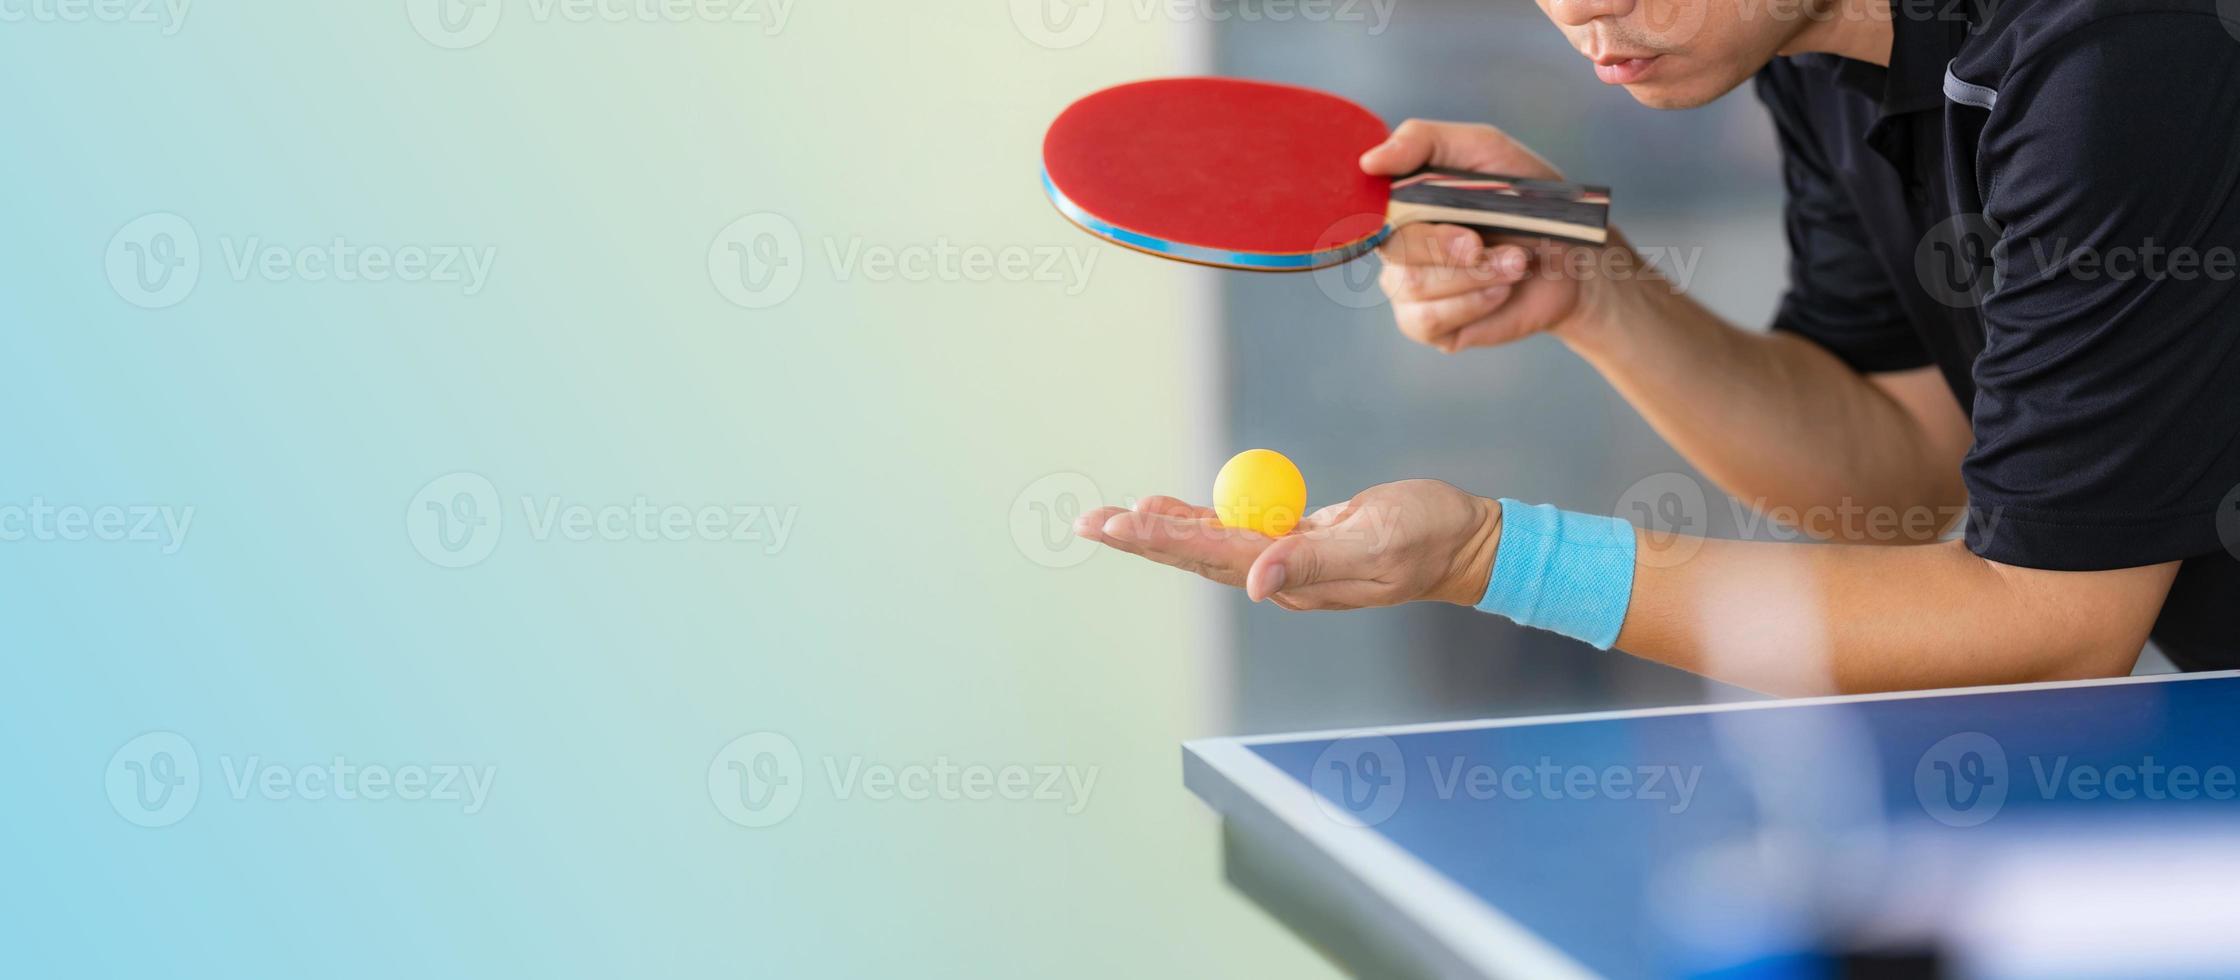 Homme jouant au tennis de table avec raquette et balle dans une salle de sport photo